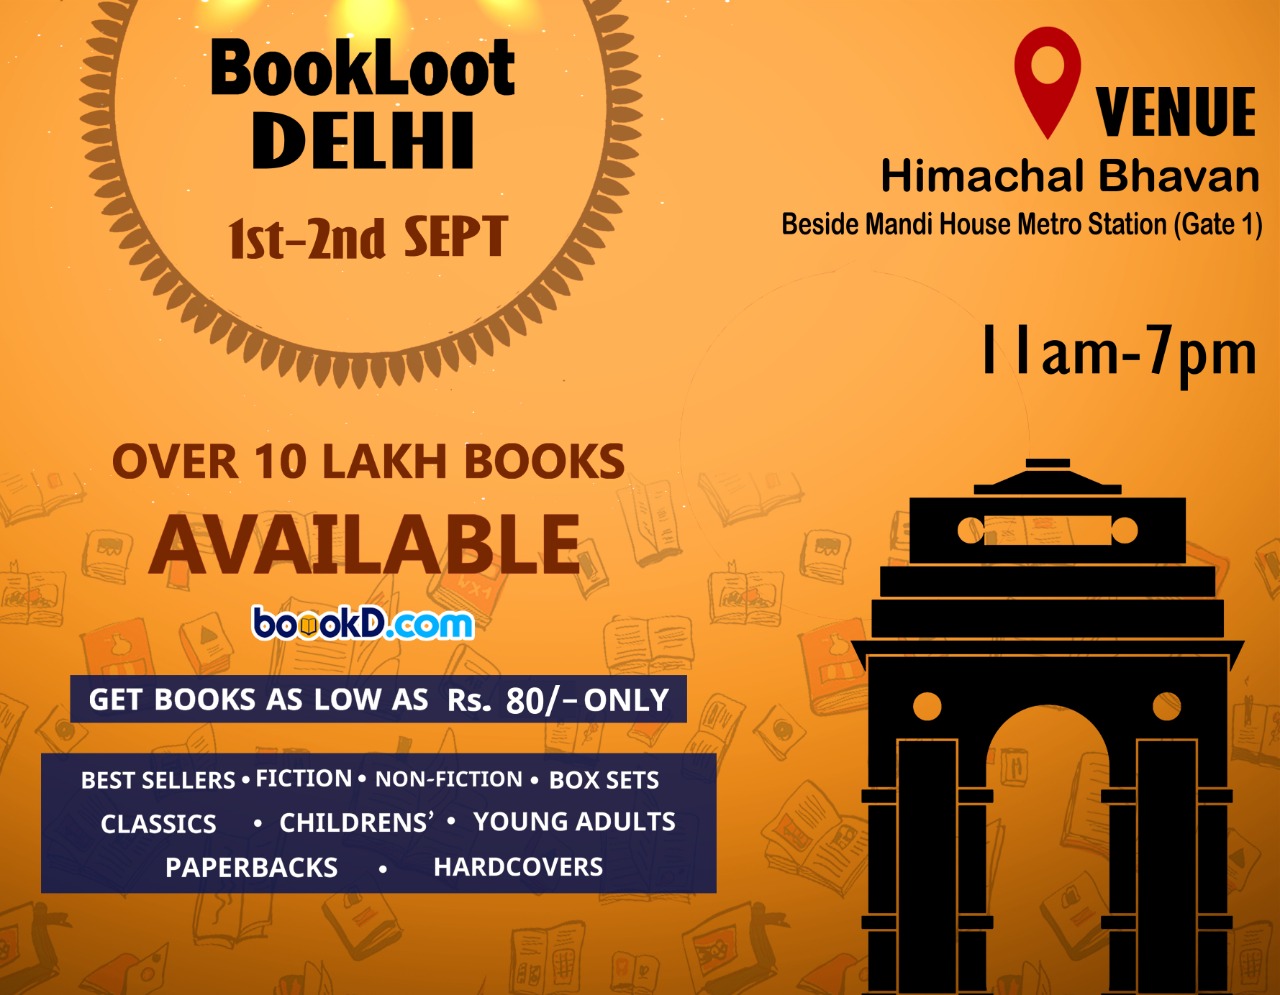 BookLoot Delhi, North Delhi, Delhi, India